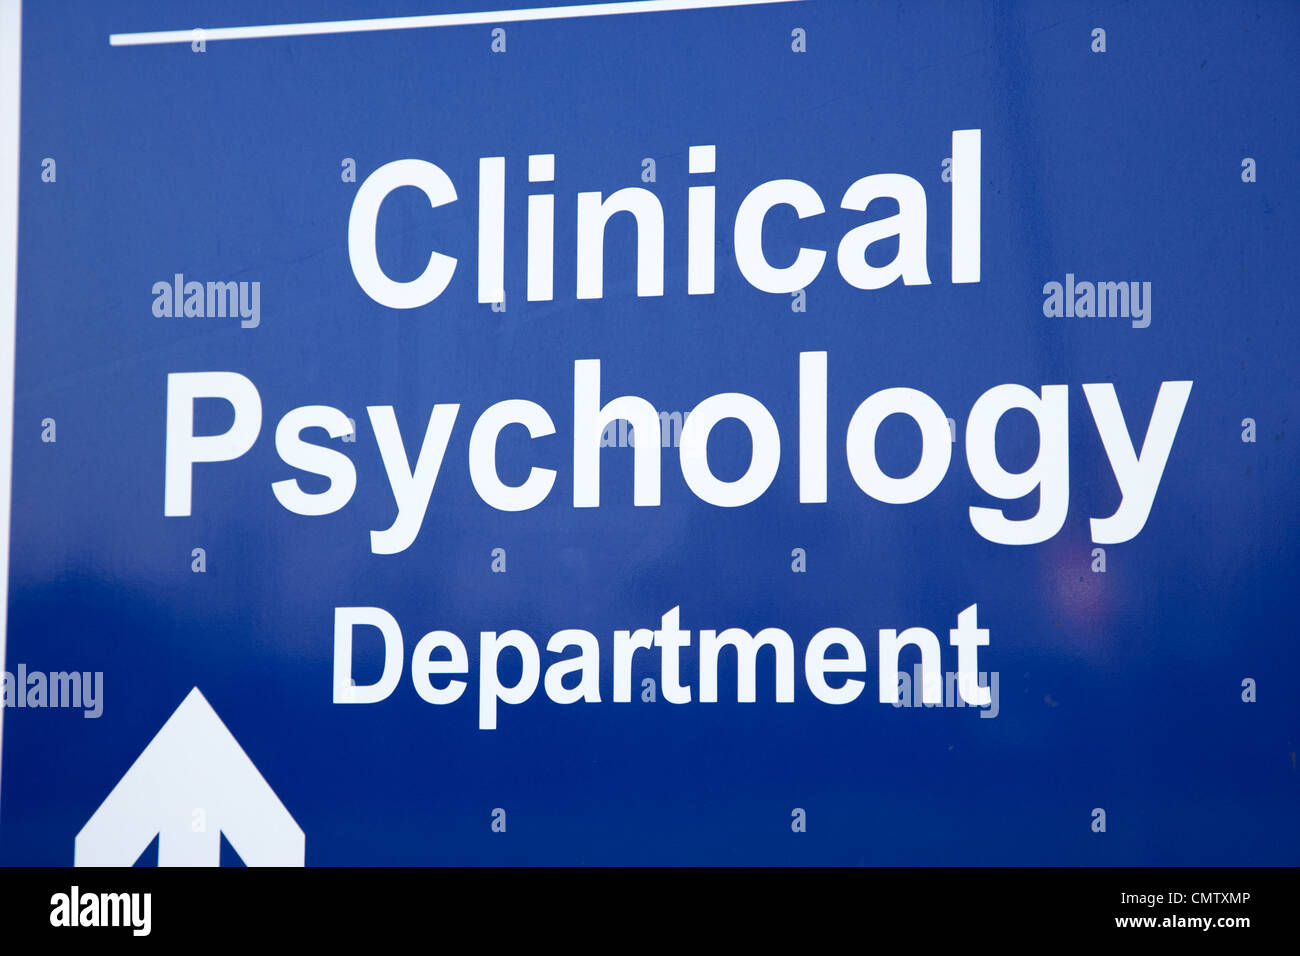 Panneau pour département de psychologie clinique de l'hôpital uk united kingdom Banque D'Images